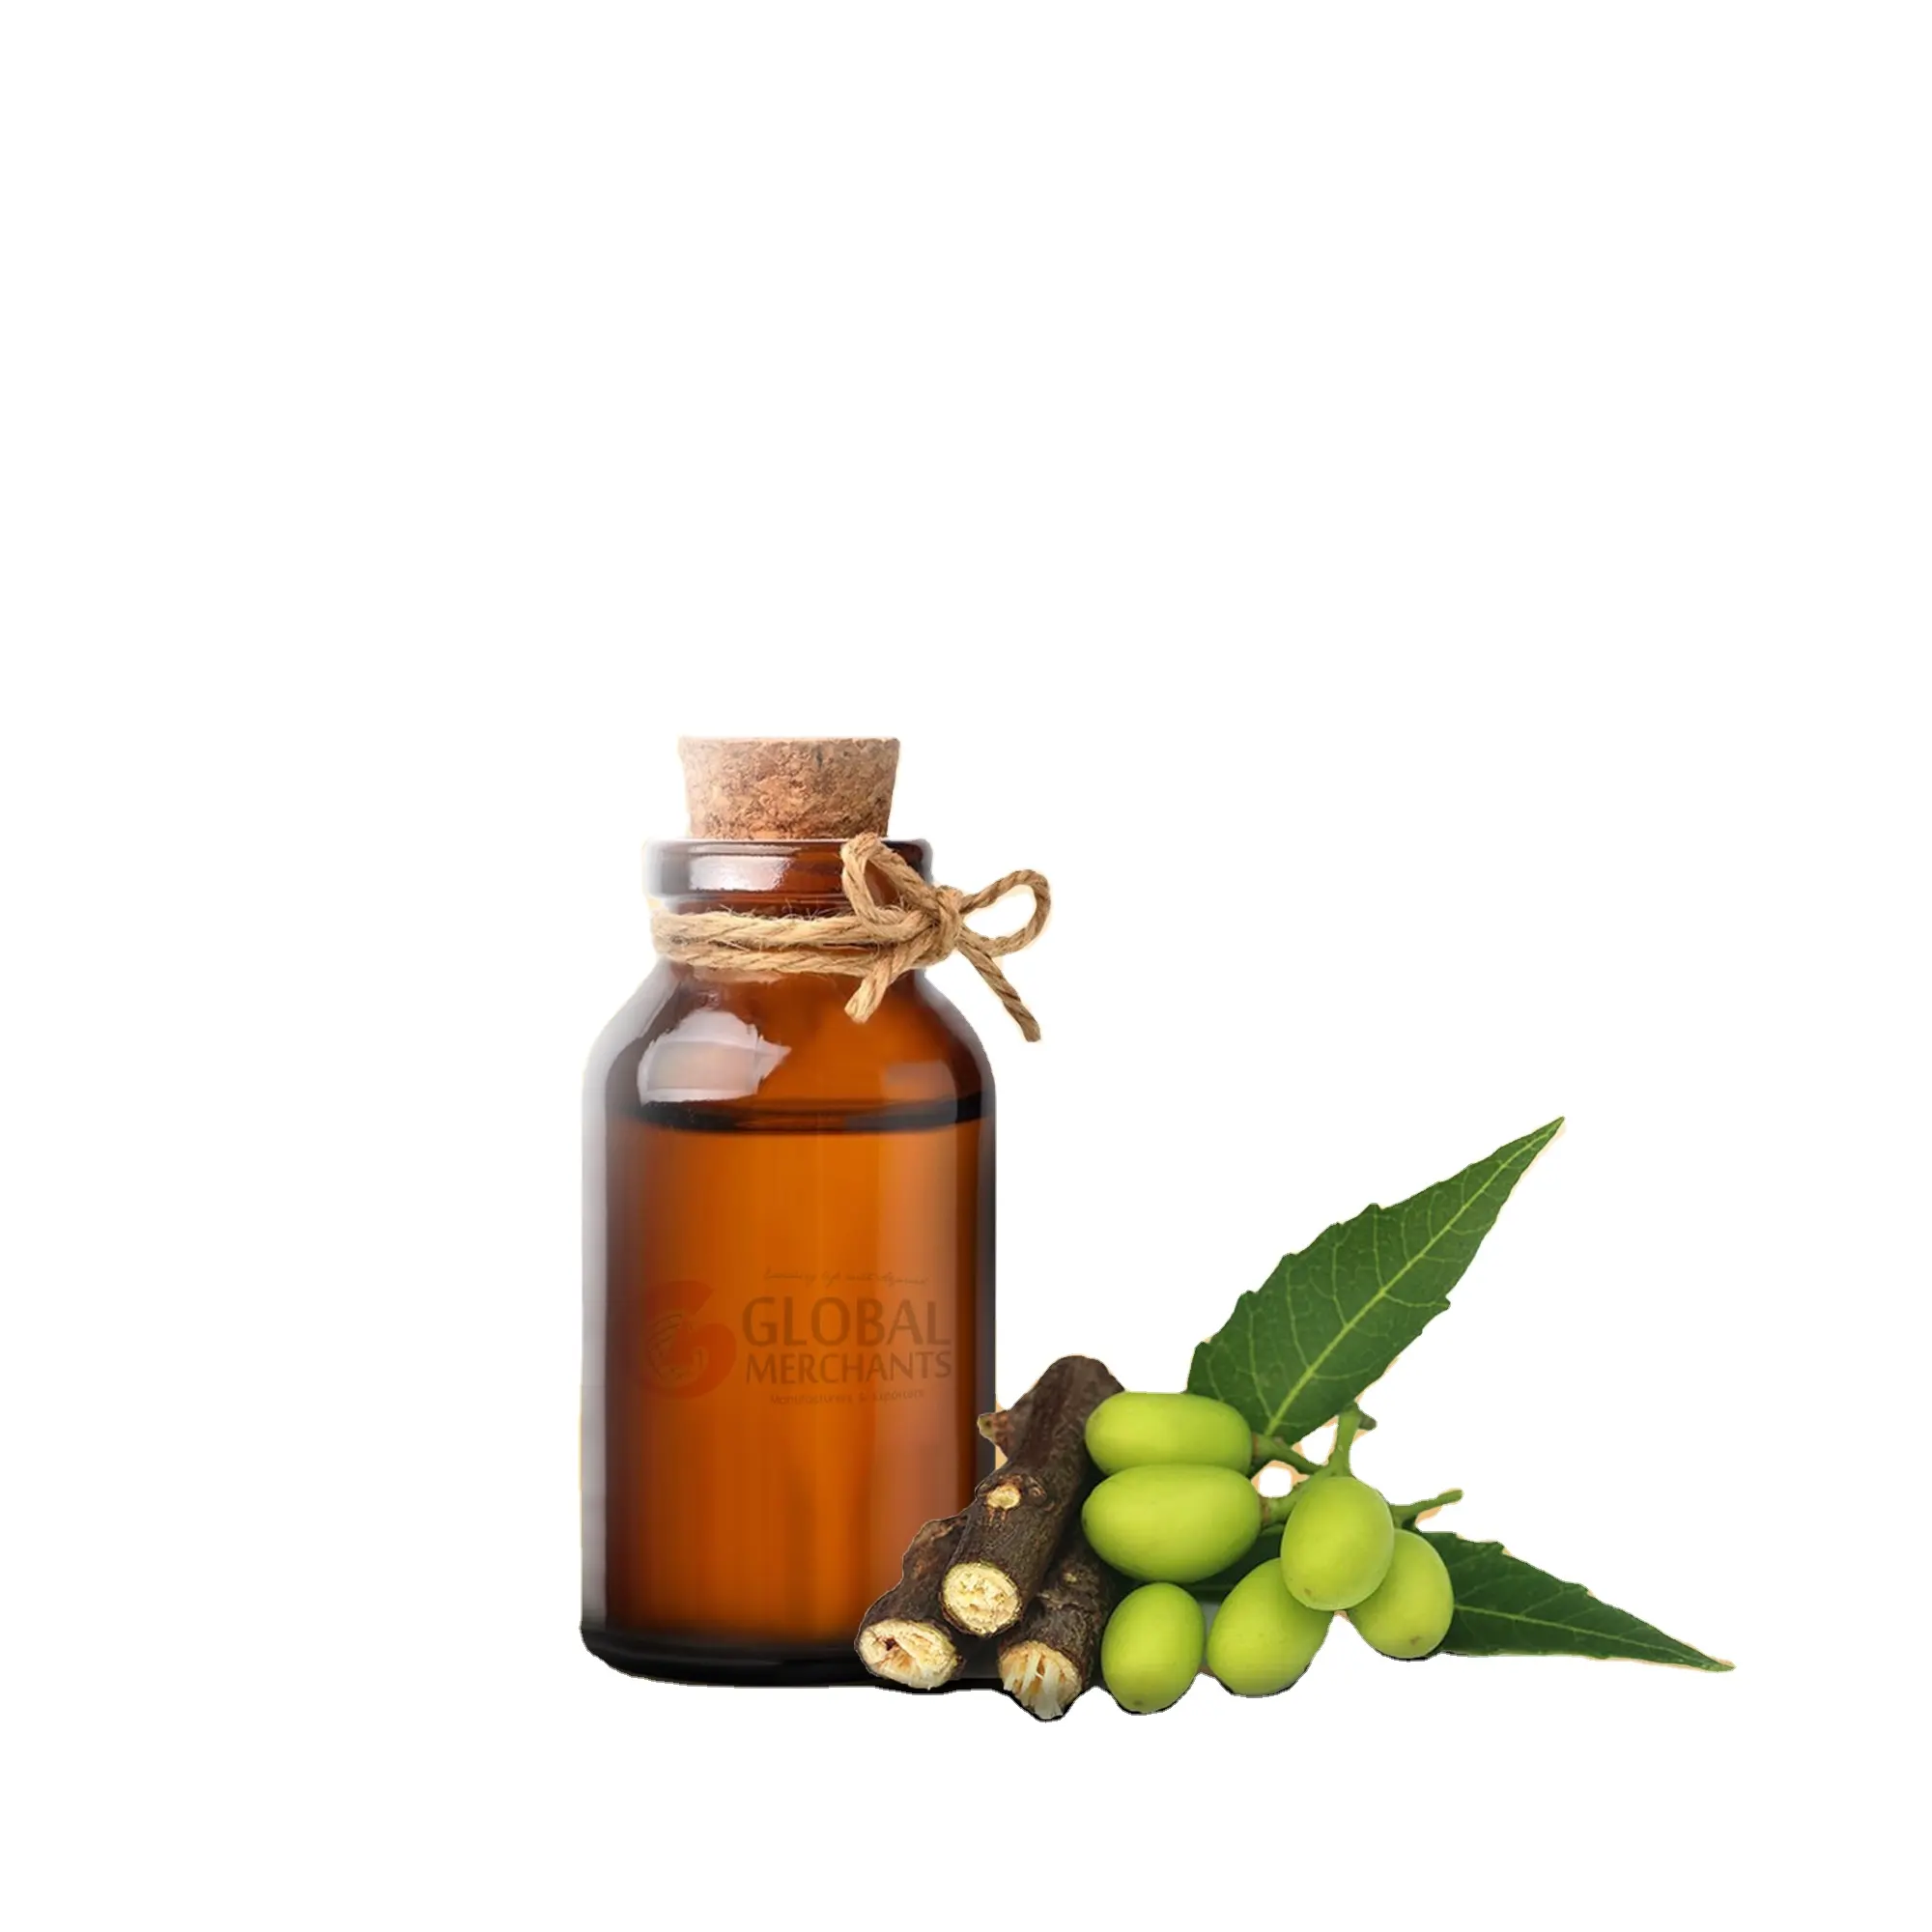 Aromaterapia usa estratto vegetale olio di Neem qualità assicurata 100% olio essenziale di Neem biologico fornitore dall'india